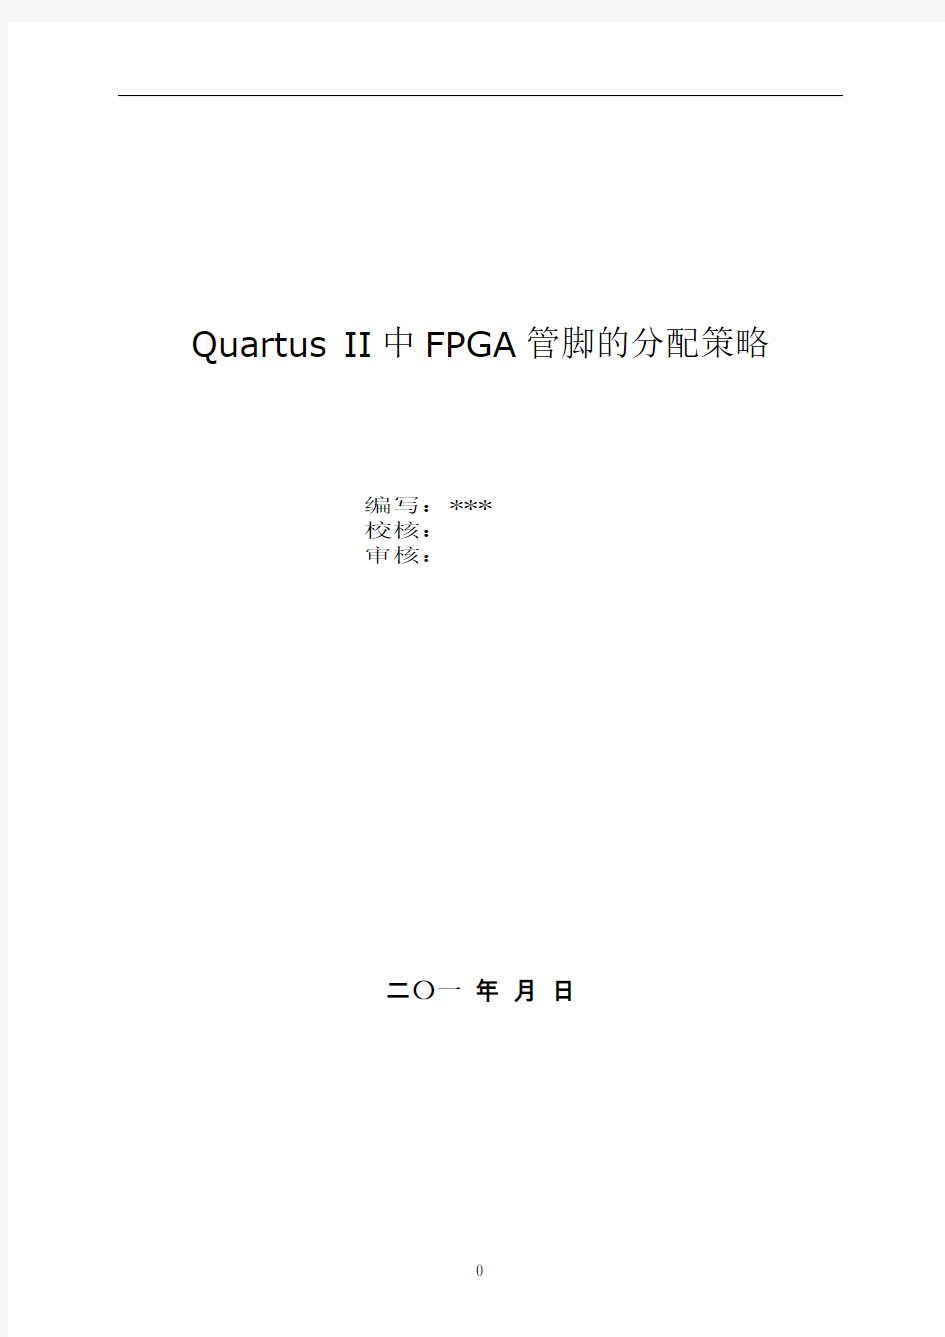 Quartus-II中FPGA管脚的分配策略